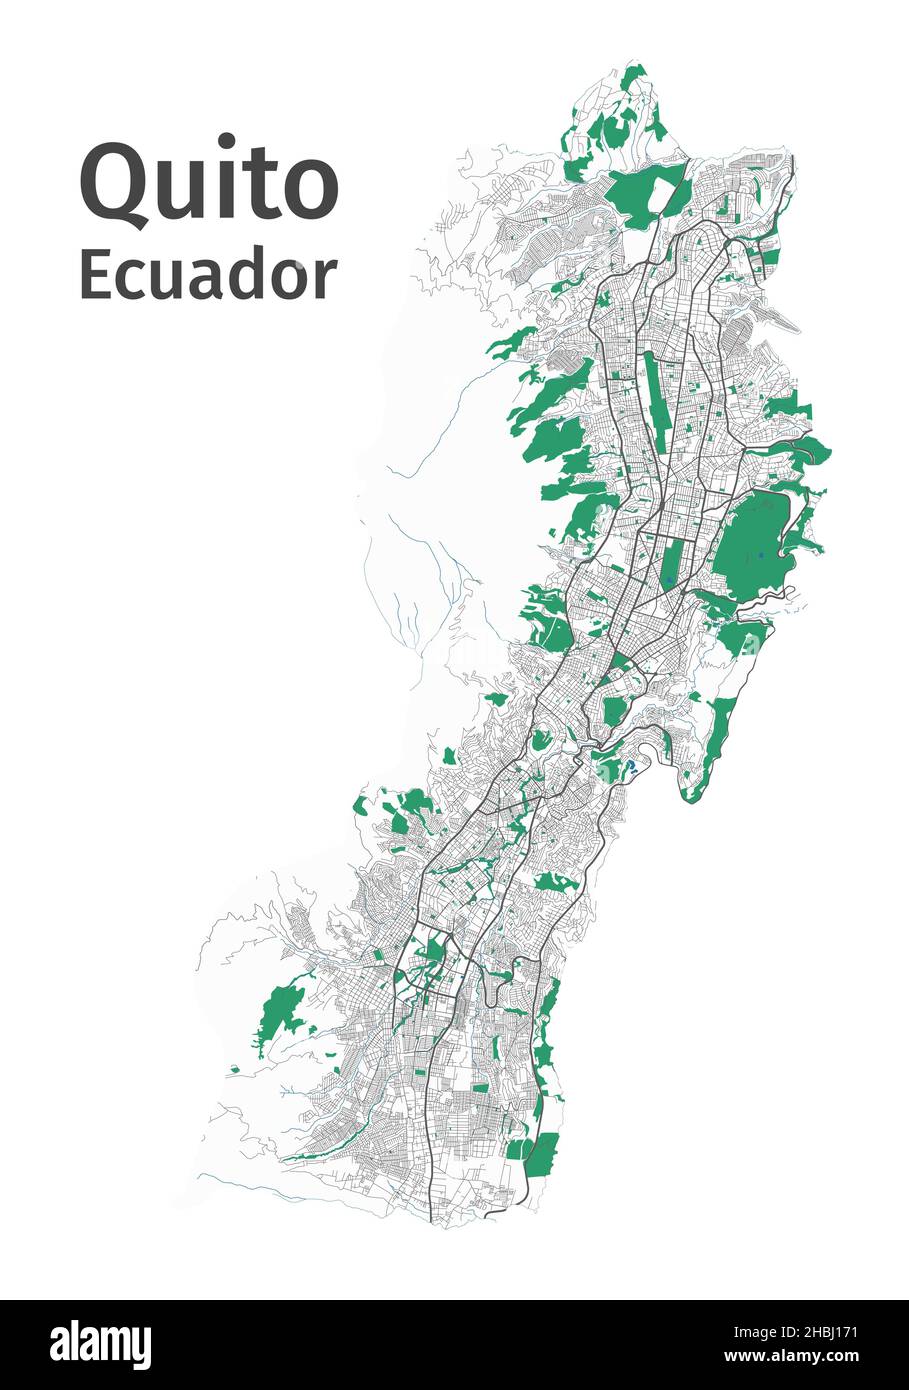 Quito-Vektorkarte. Detaillierte Karte des Verwaltungsgebiets der Stadt Quito. Stadtbild-Panorama. Lizenzfreie Vektorgrafik. Übersichtskarte mit Autobahnen, str Stock Vektor